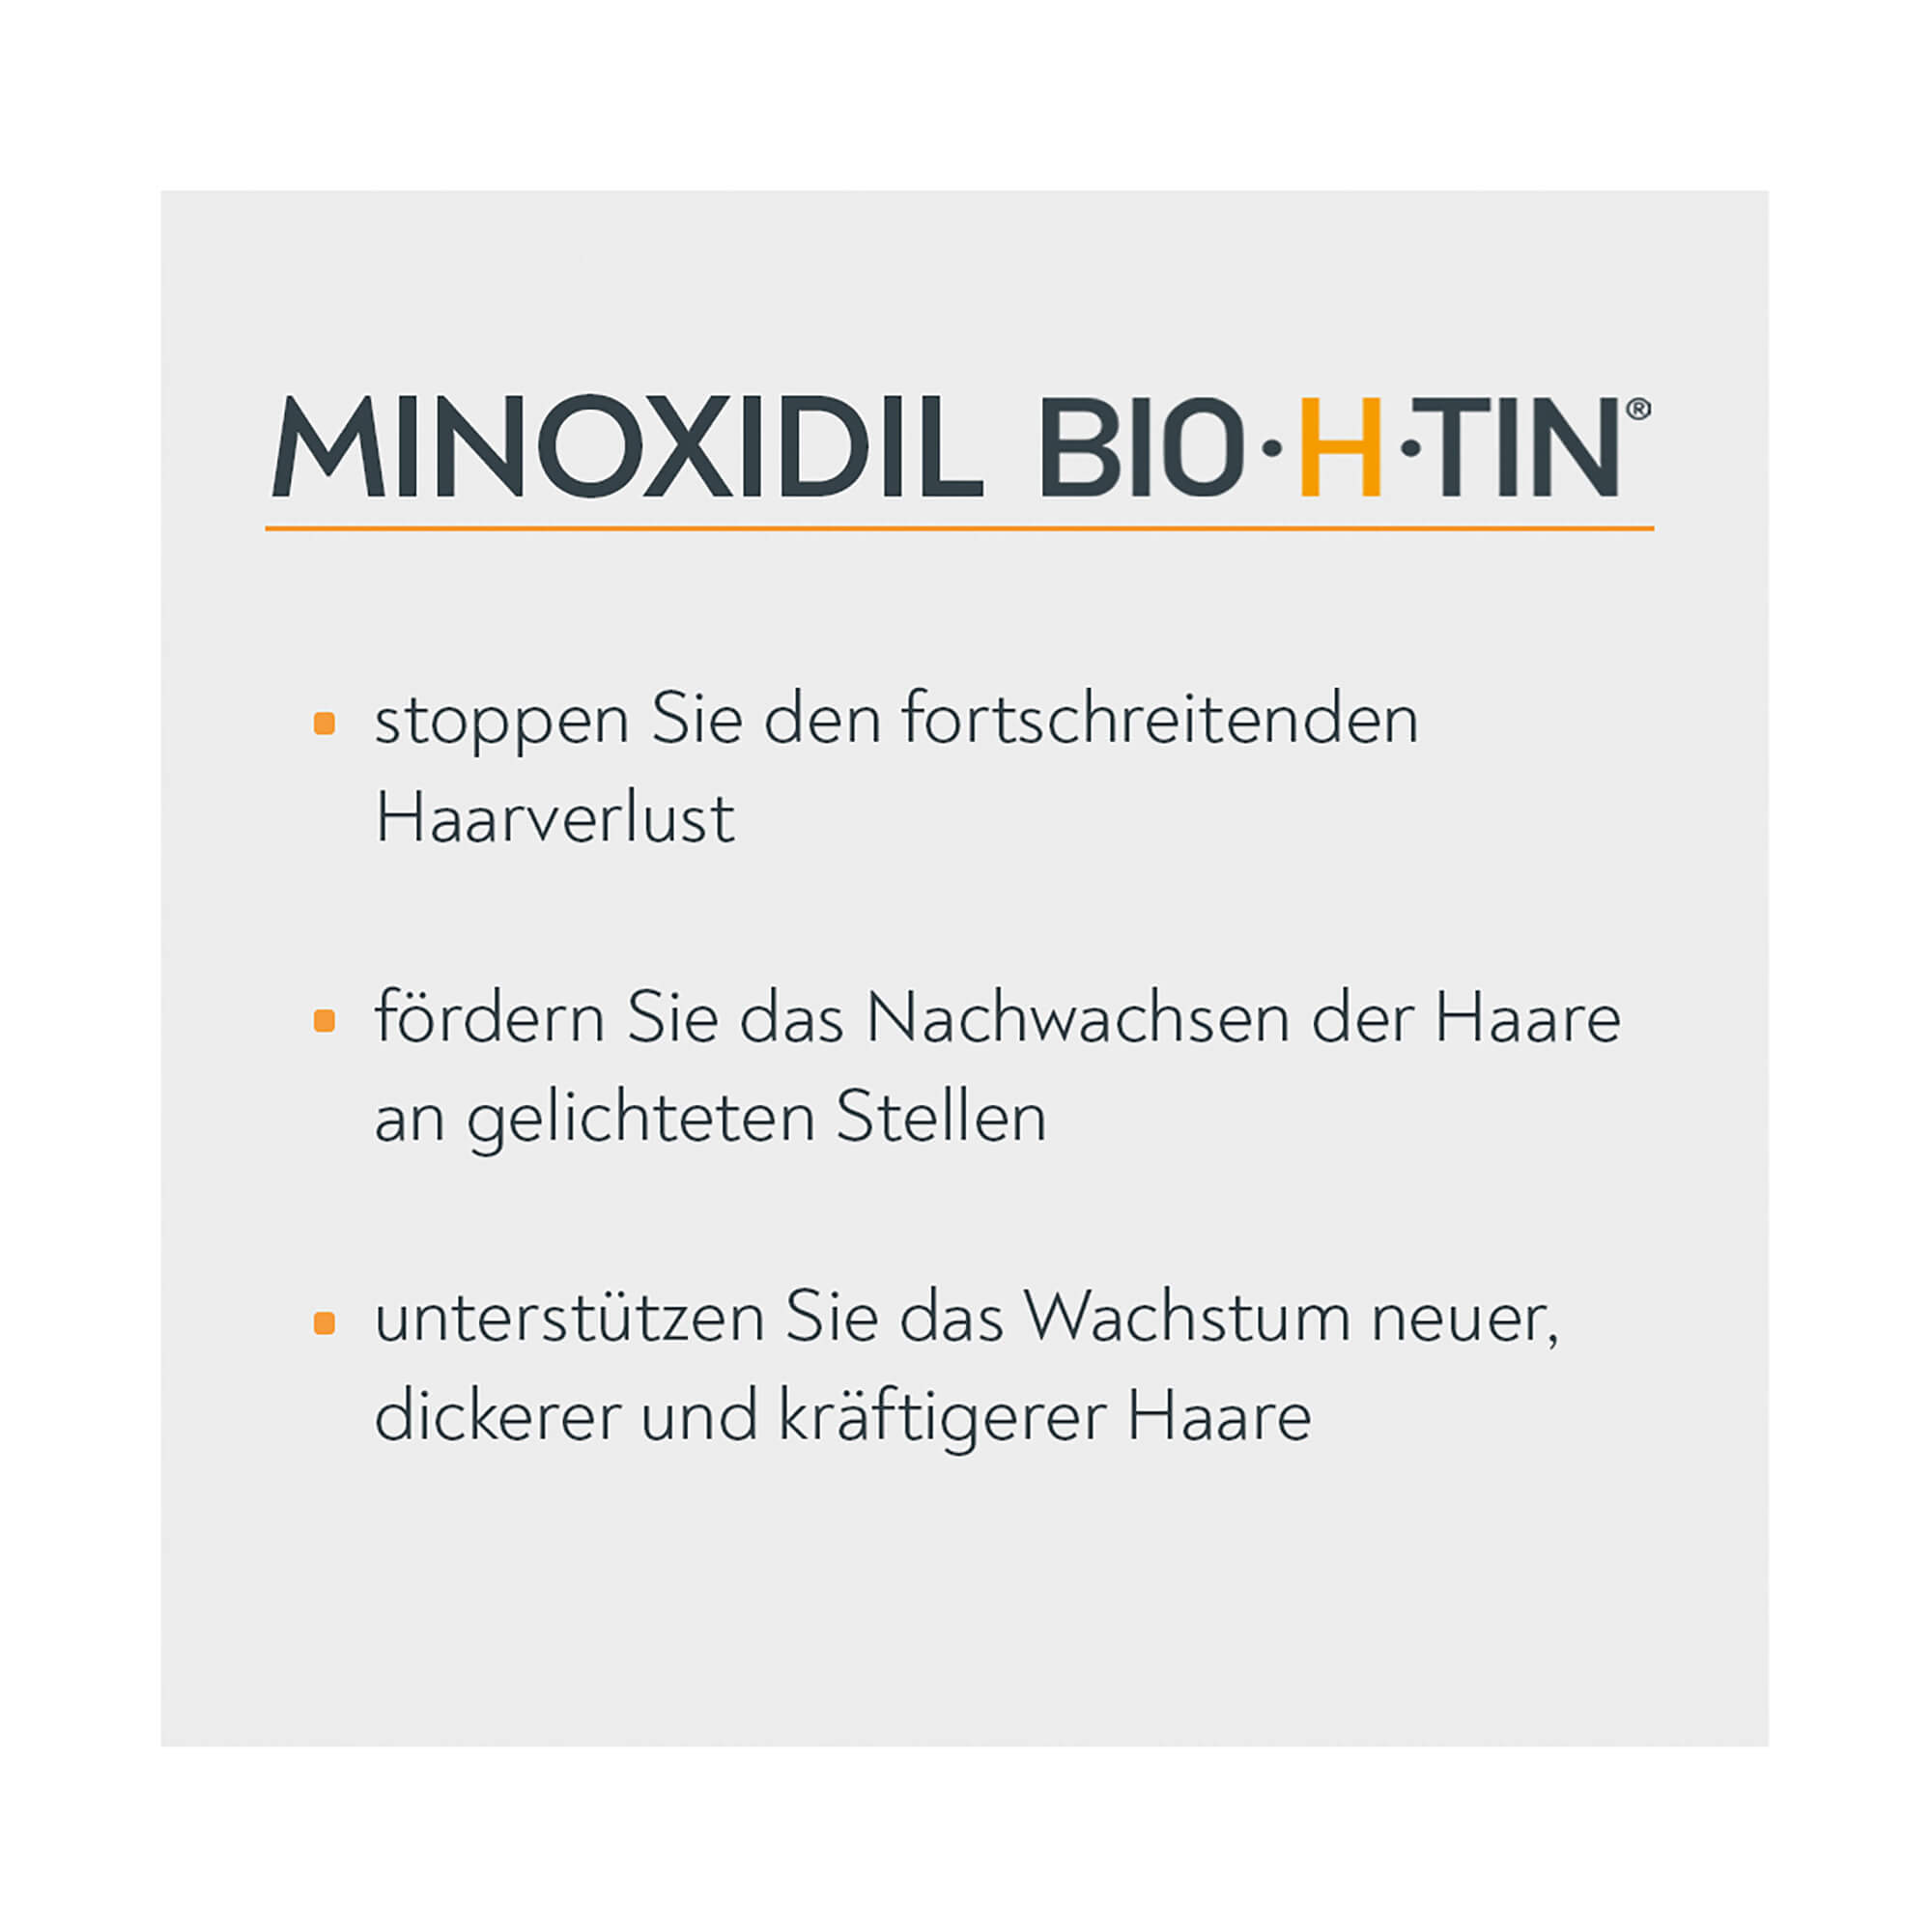 Minoxidil BIO-H-TIN-Pharma 50mg/ml Männer Spray